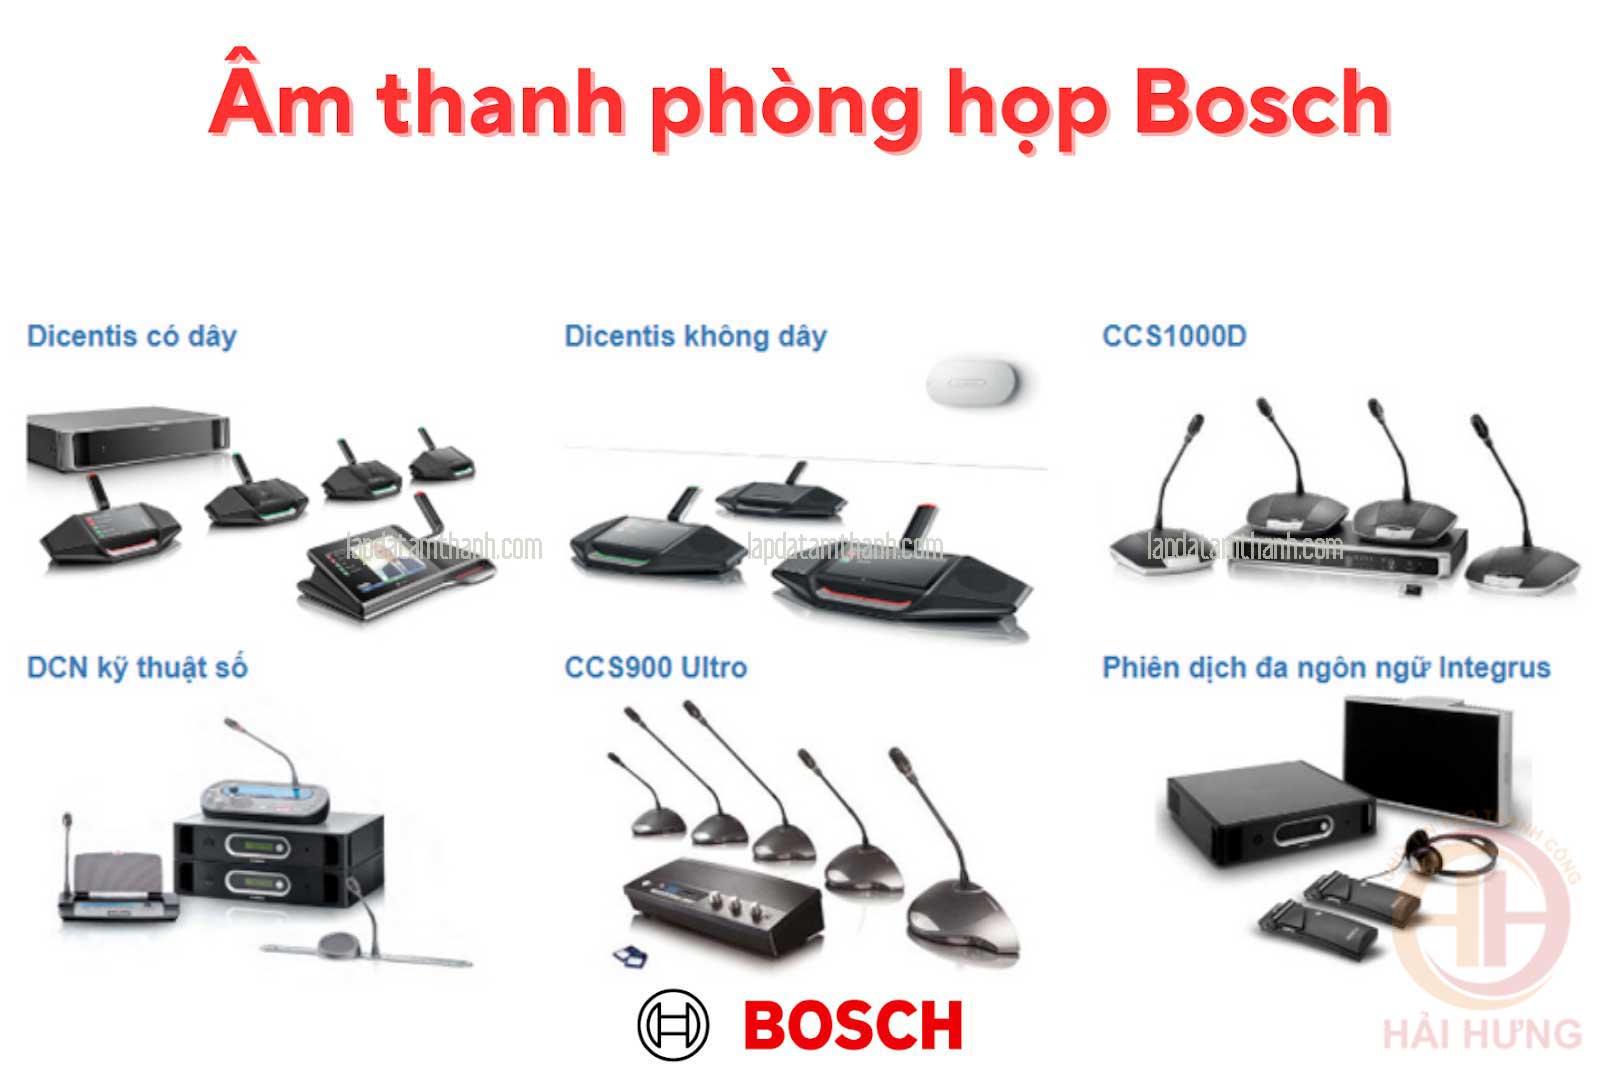 Hệ thống âm thanh phòng họp Bosch